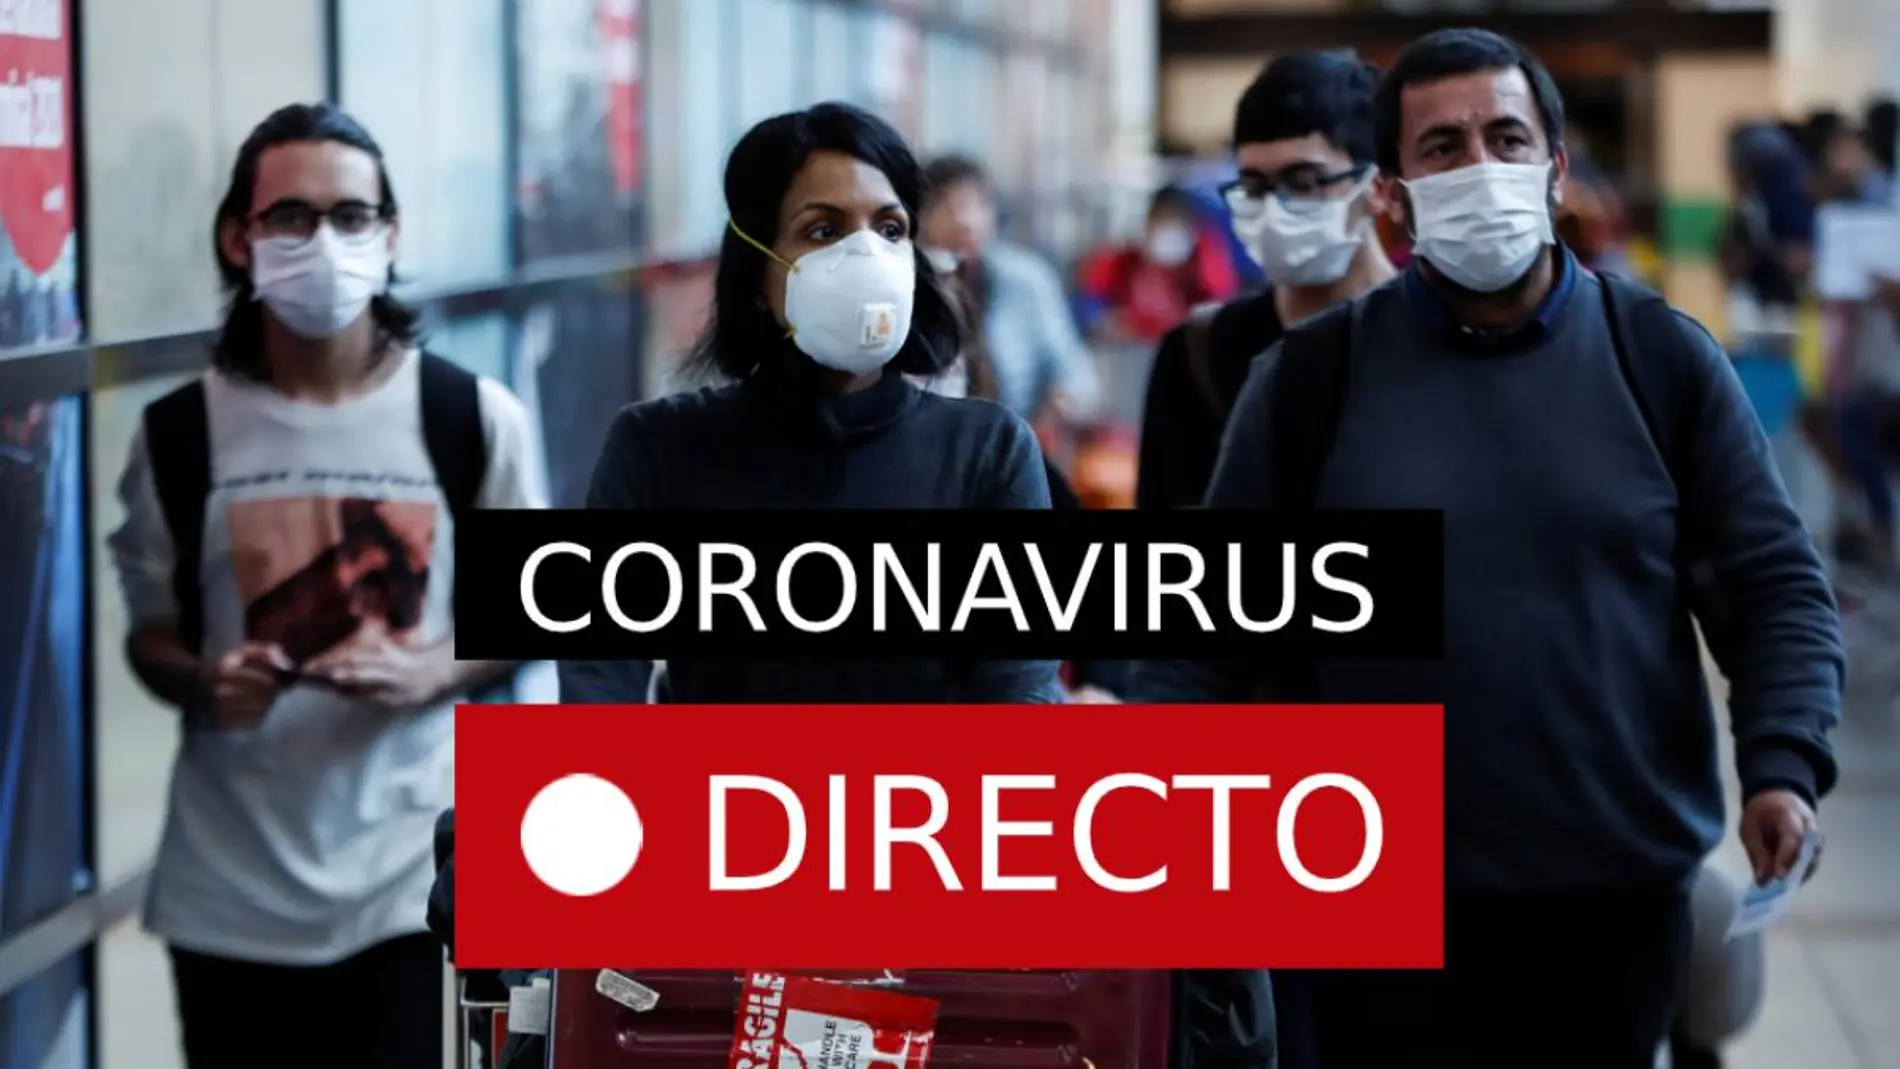 Coronavirus | Última hora del virus en España, Italia, China y la OMS